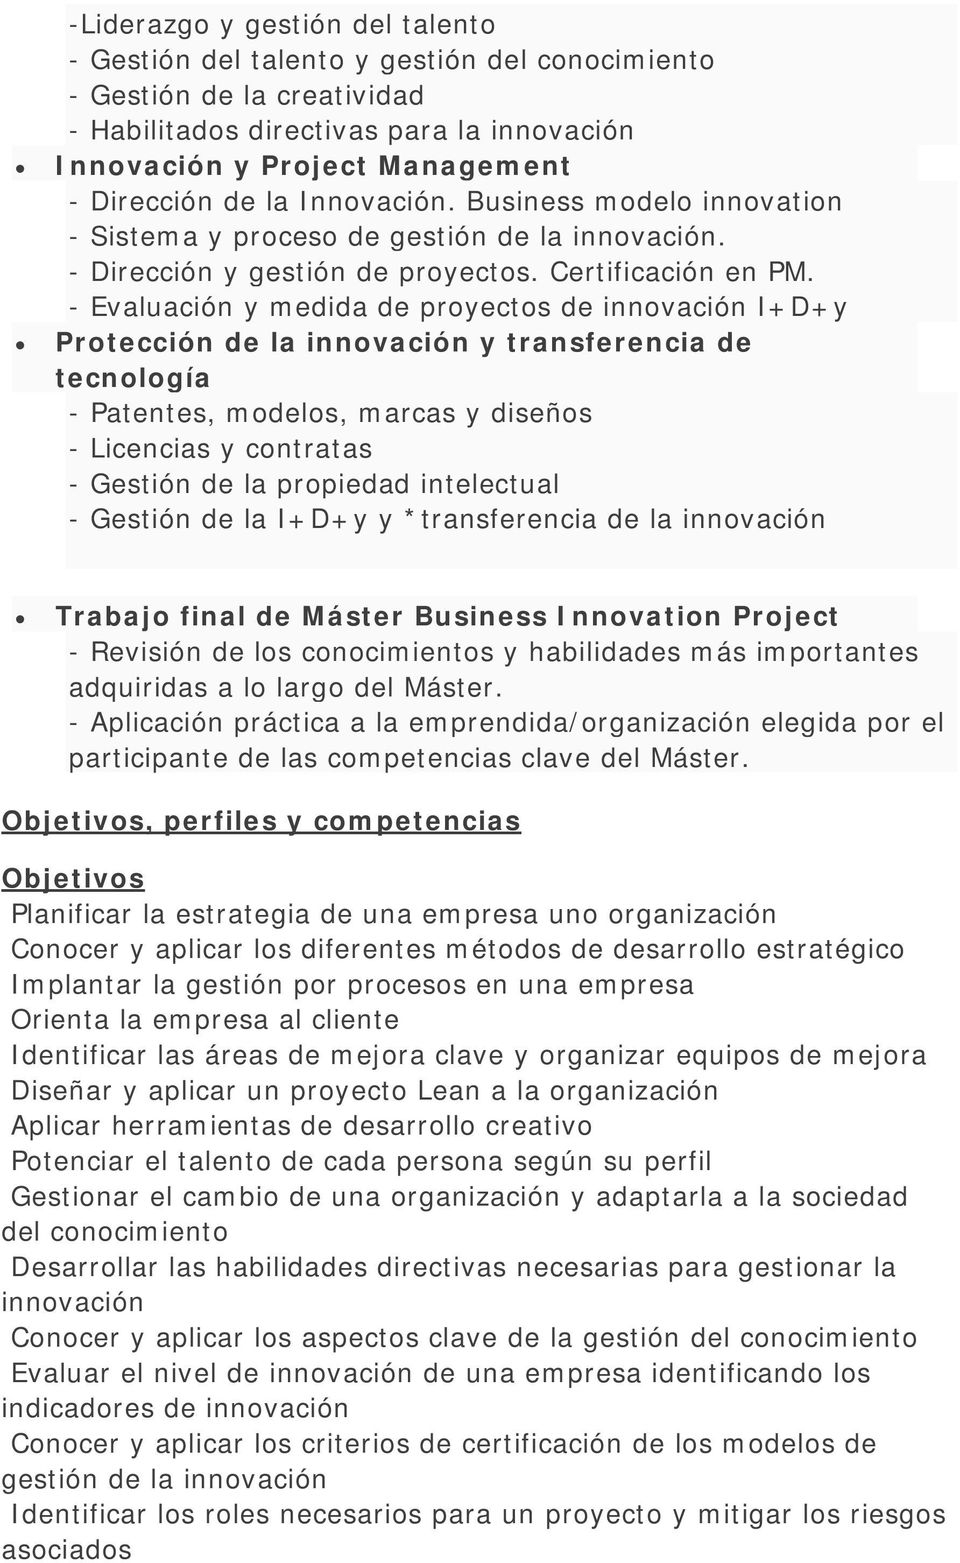 - Evaluación y medida de proyectos de innovación I+D+y Protección de la innovación y transferencia de tecnología - Patentes, modelos, marcas y diseños - Licencias y contratas - Gestión de la